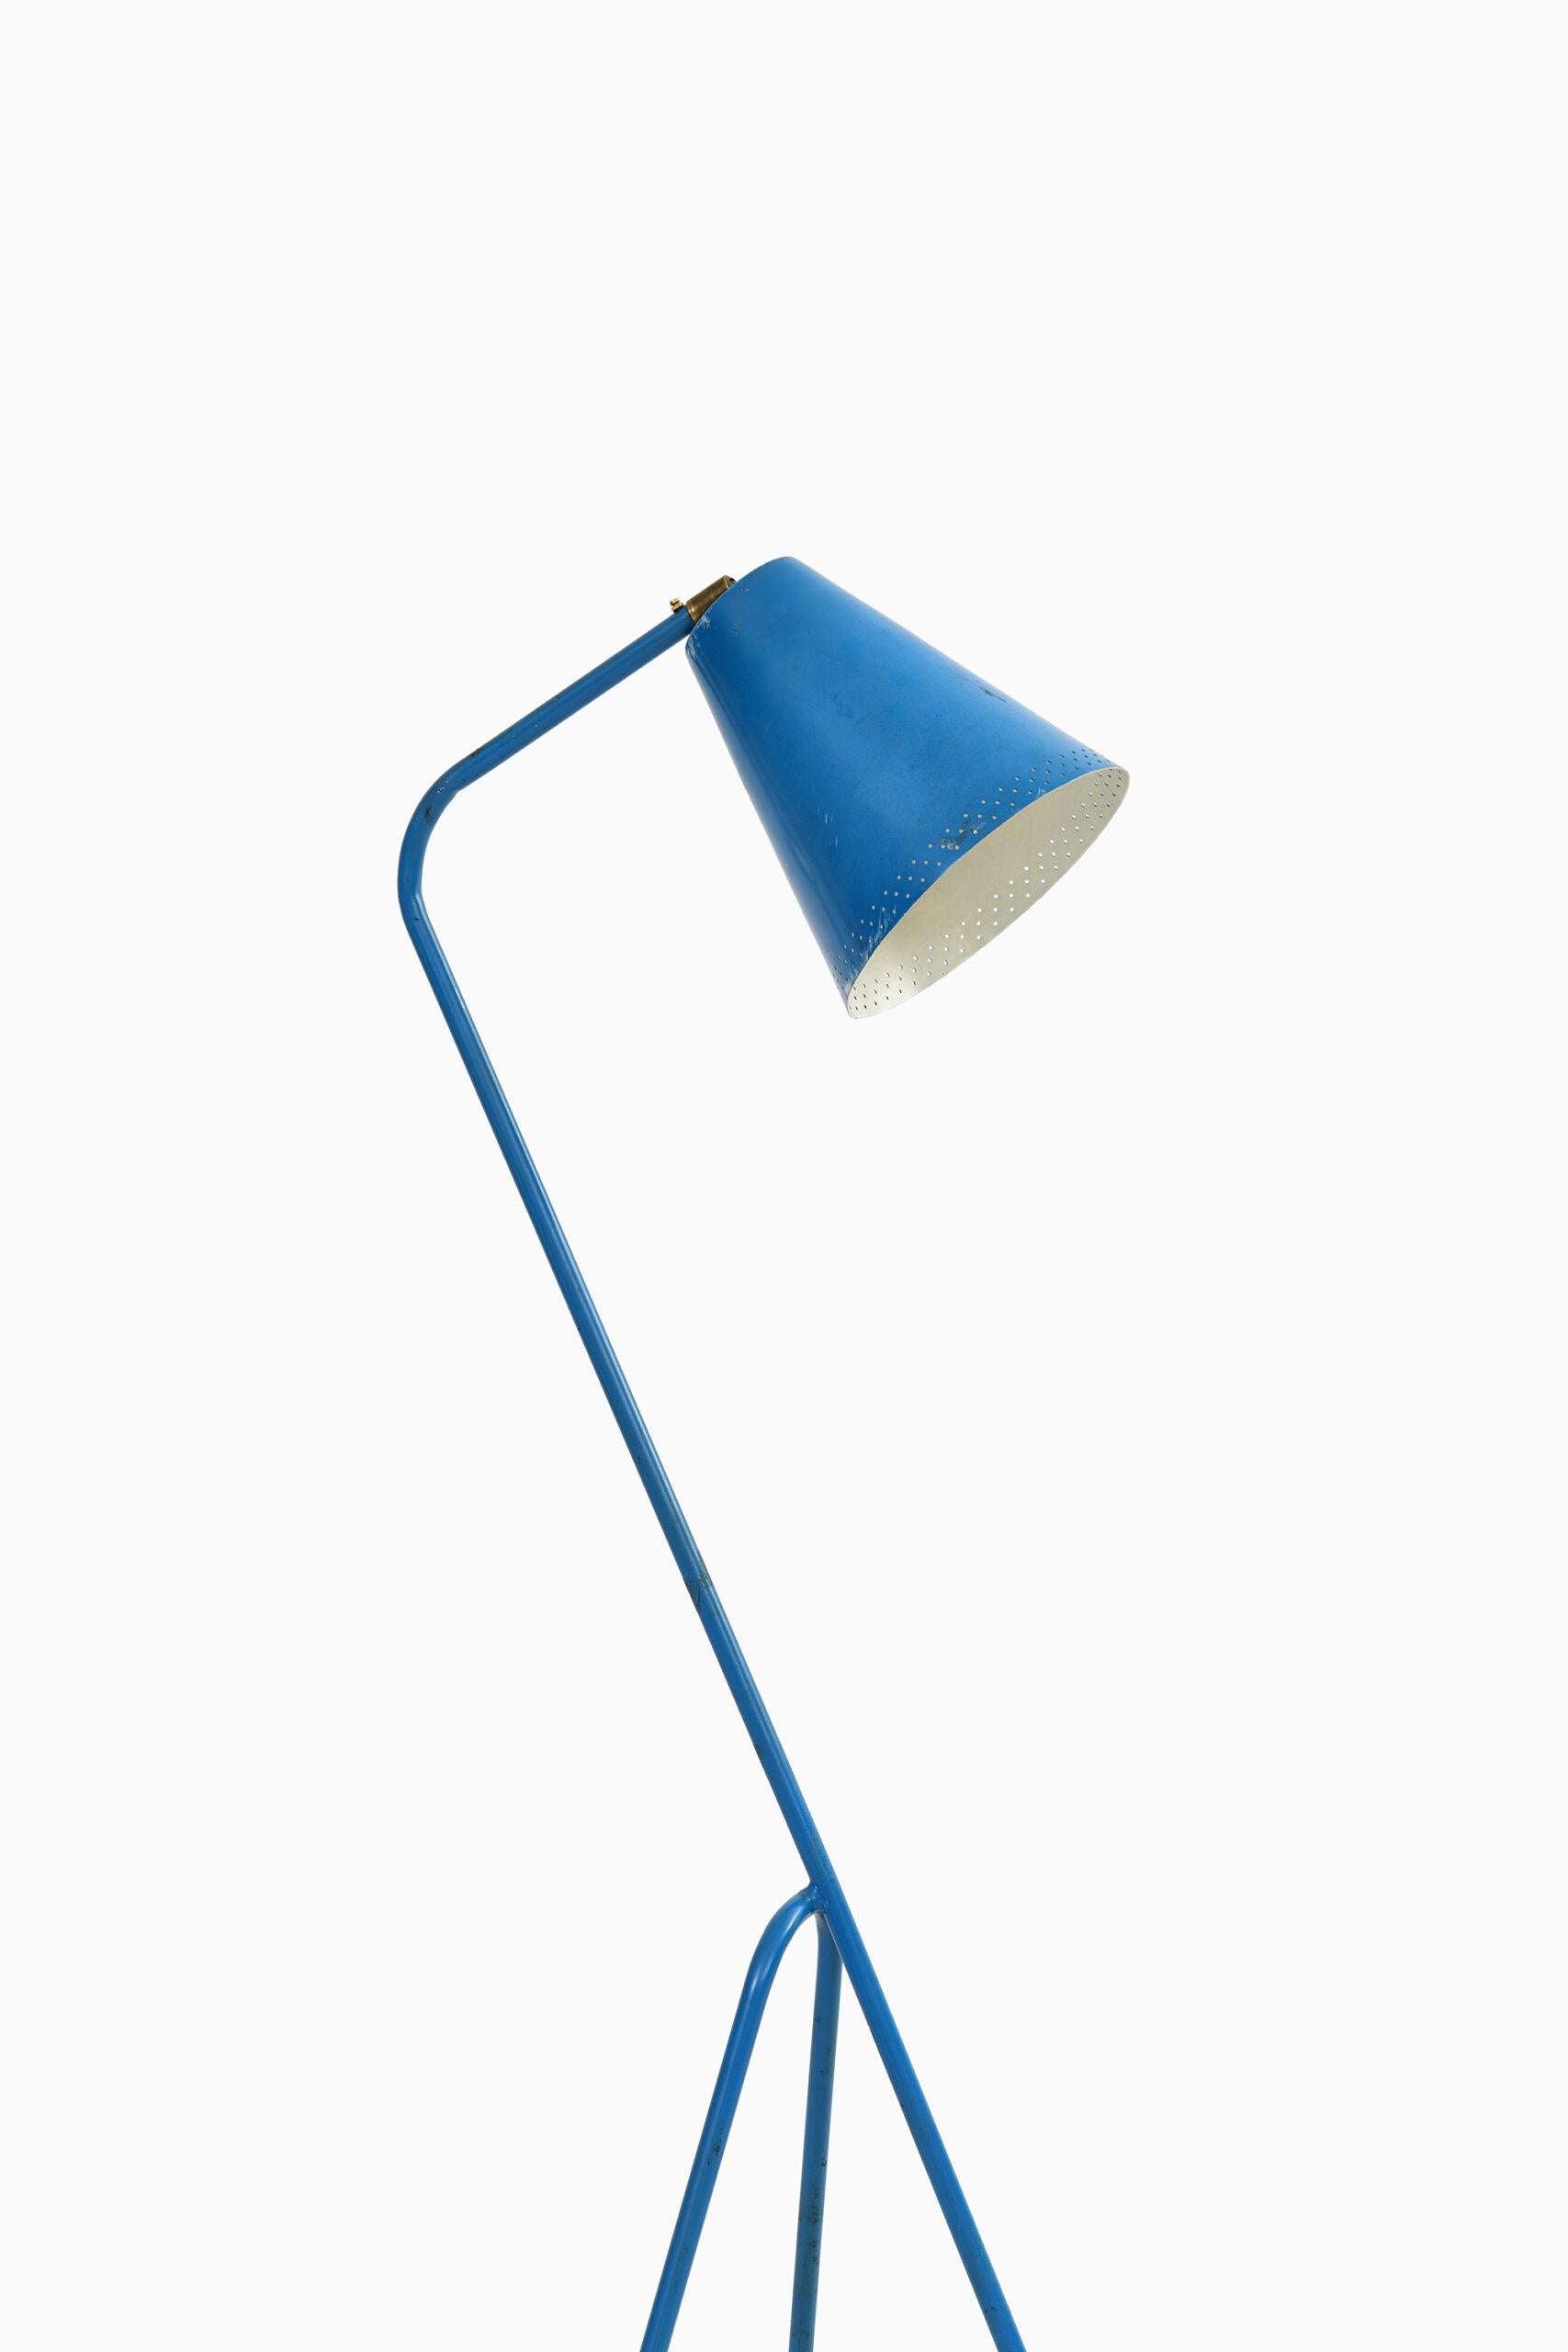 Rare lampadaire d'un designer inconnu. Dans le style de Greta Magnusson-Grossman. Probablement produit en Suède.